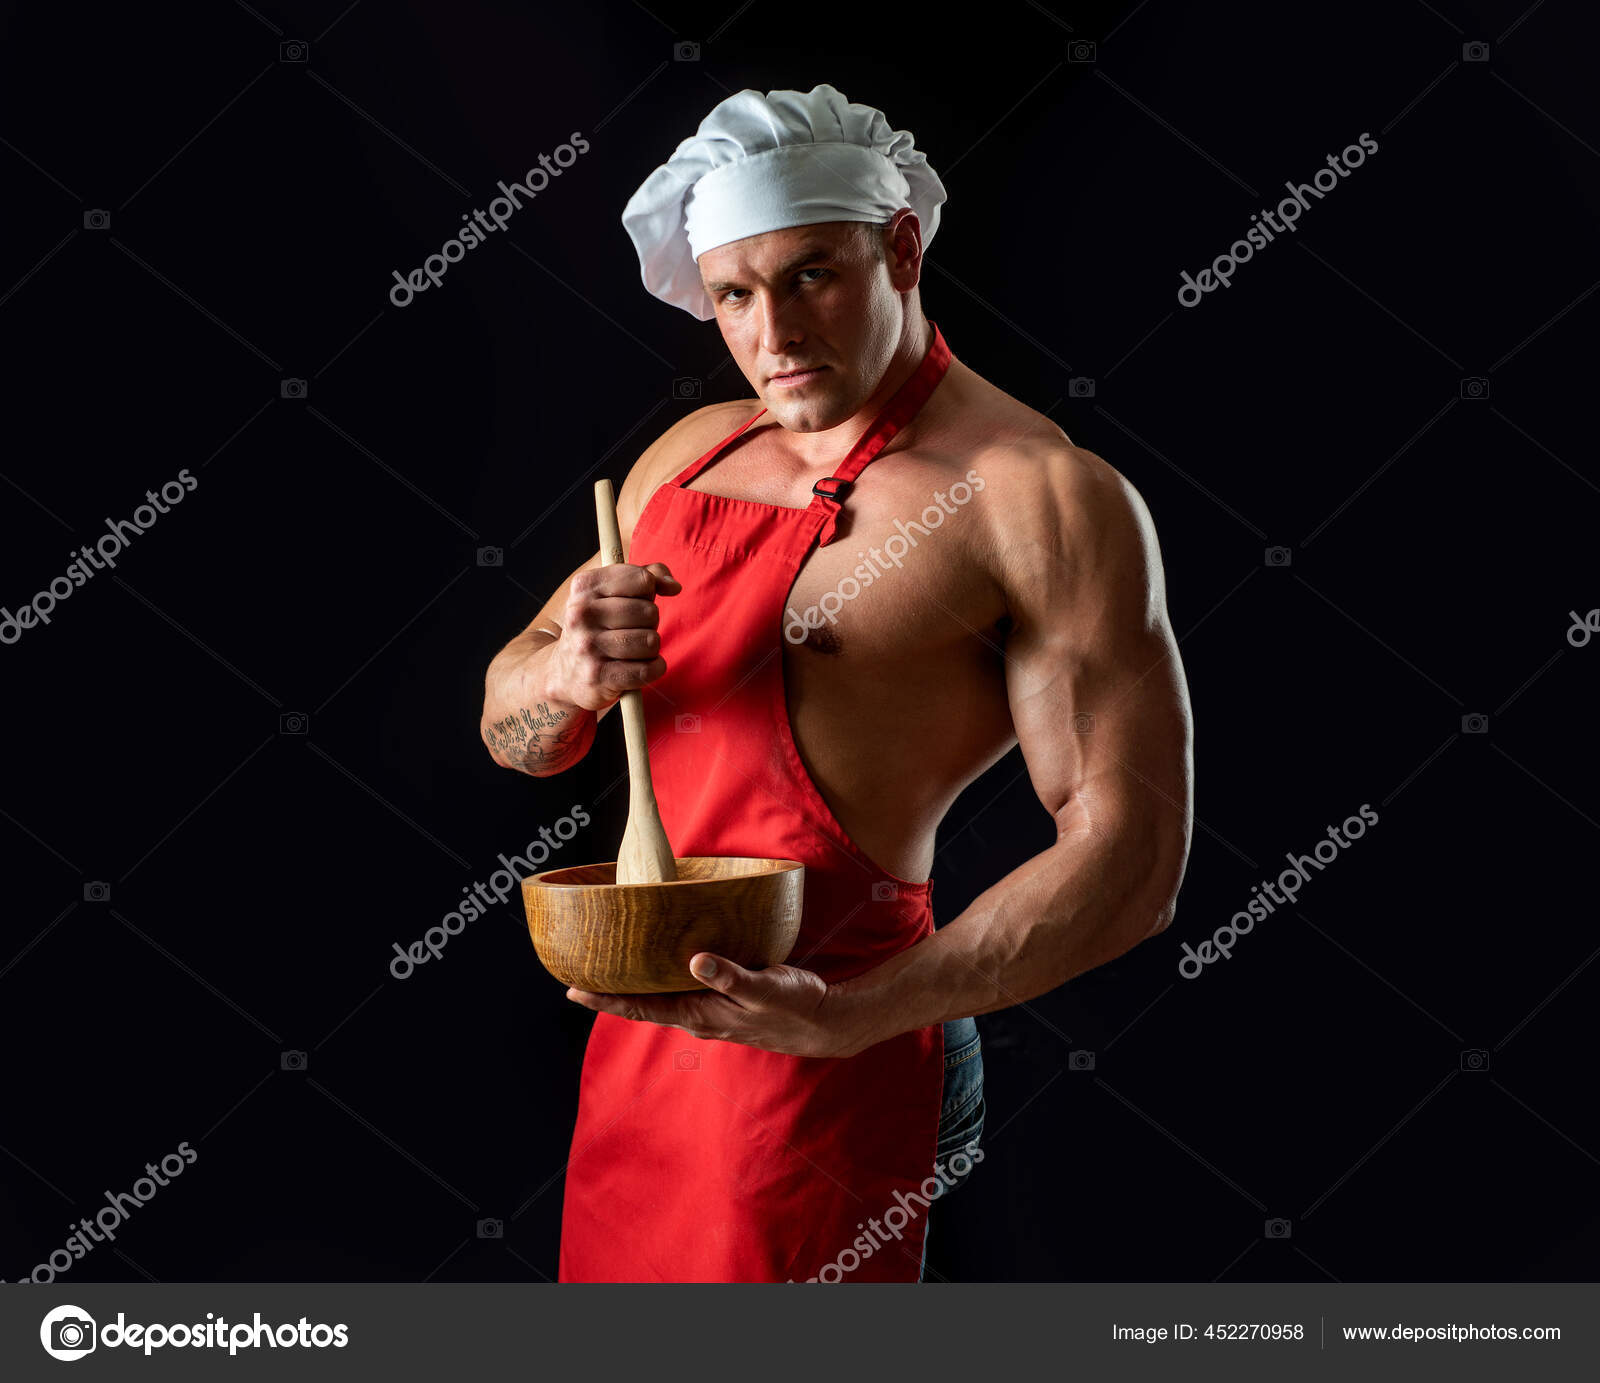 Sexy kuchař v zástěře. Svalnatý kuchař na černém pozadí. Sportovní strava.  — Stock Fotografie © Tverdohlib.com #452270958